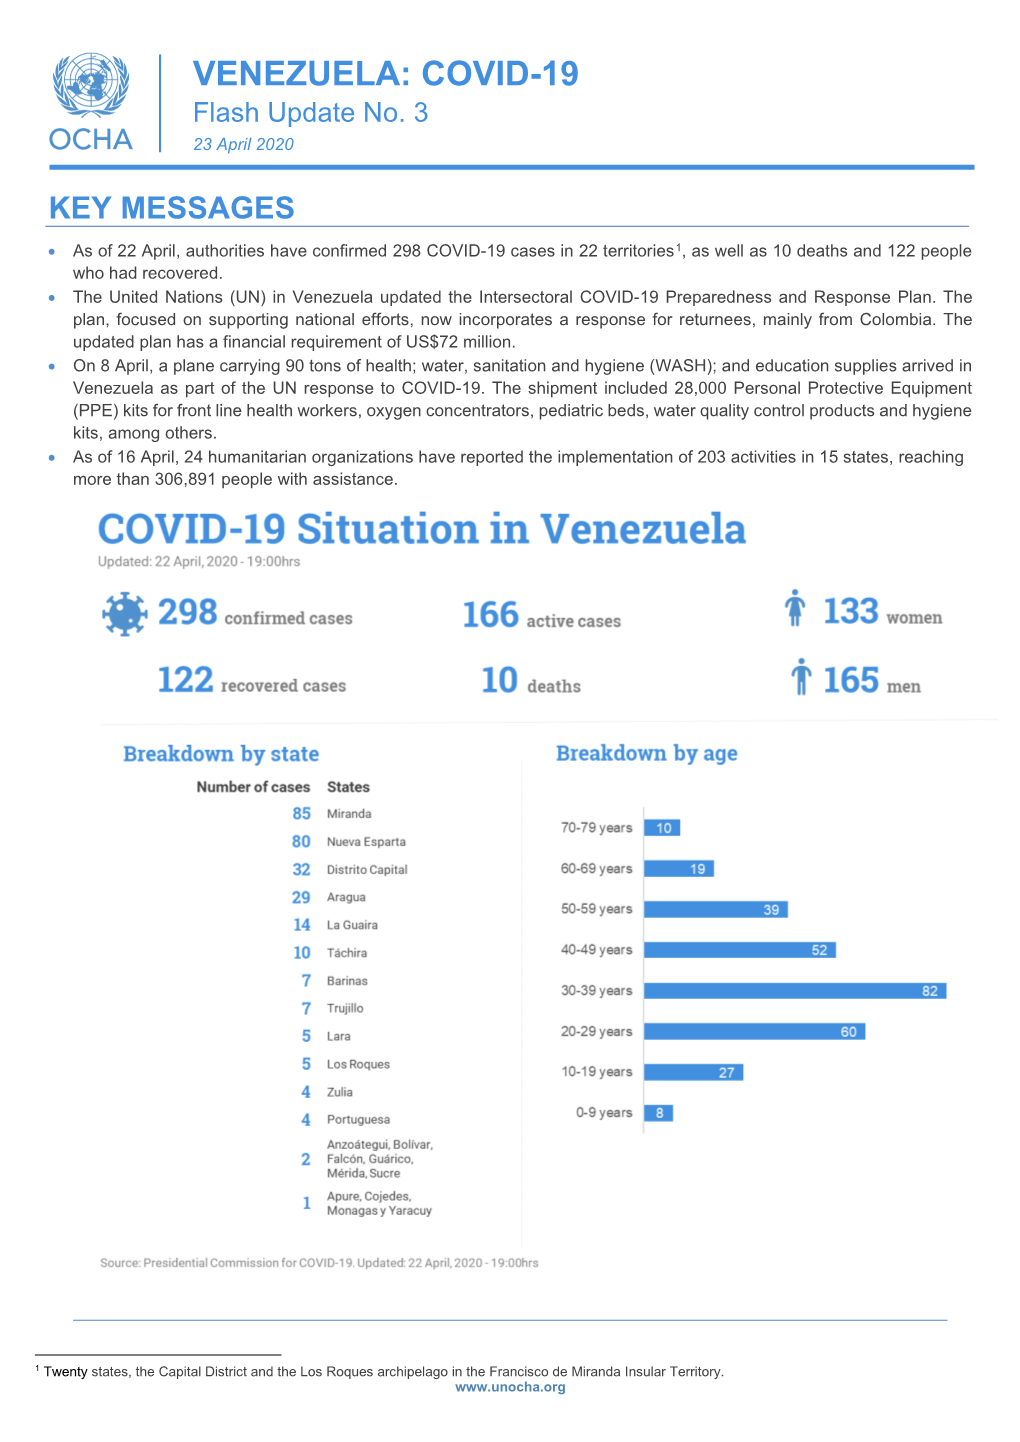 VENEZUELA: COVID-19 Flash Update No